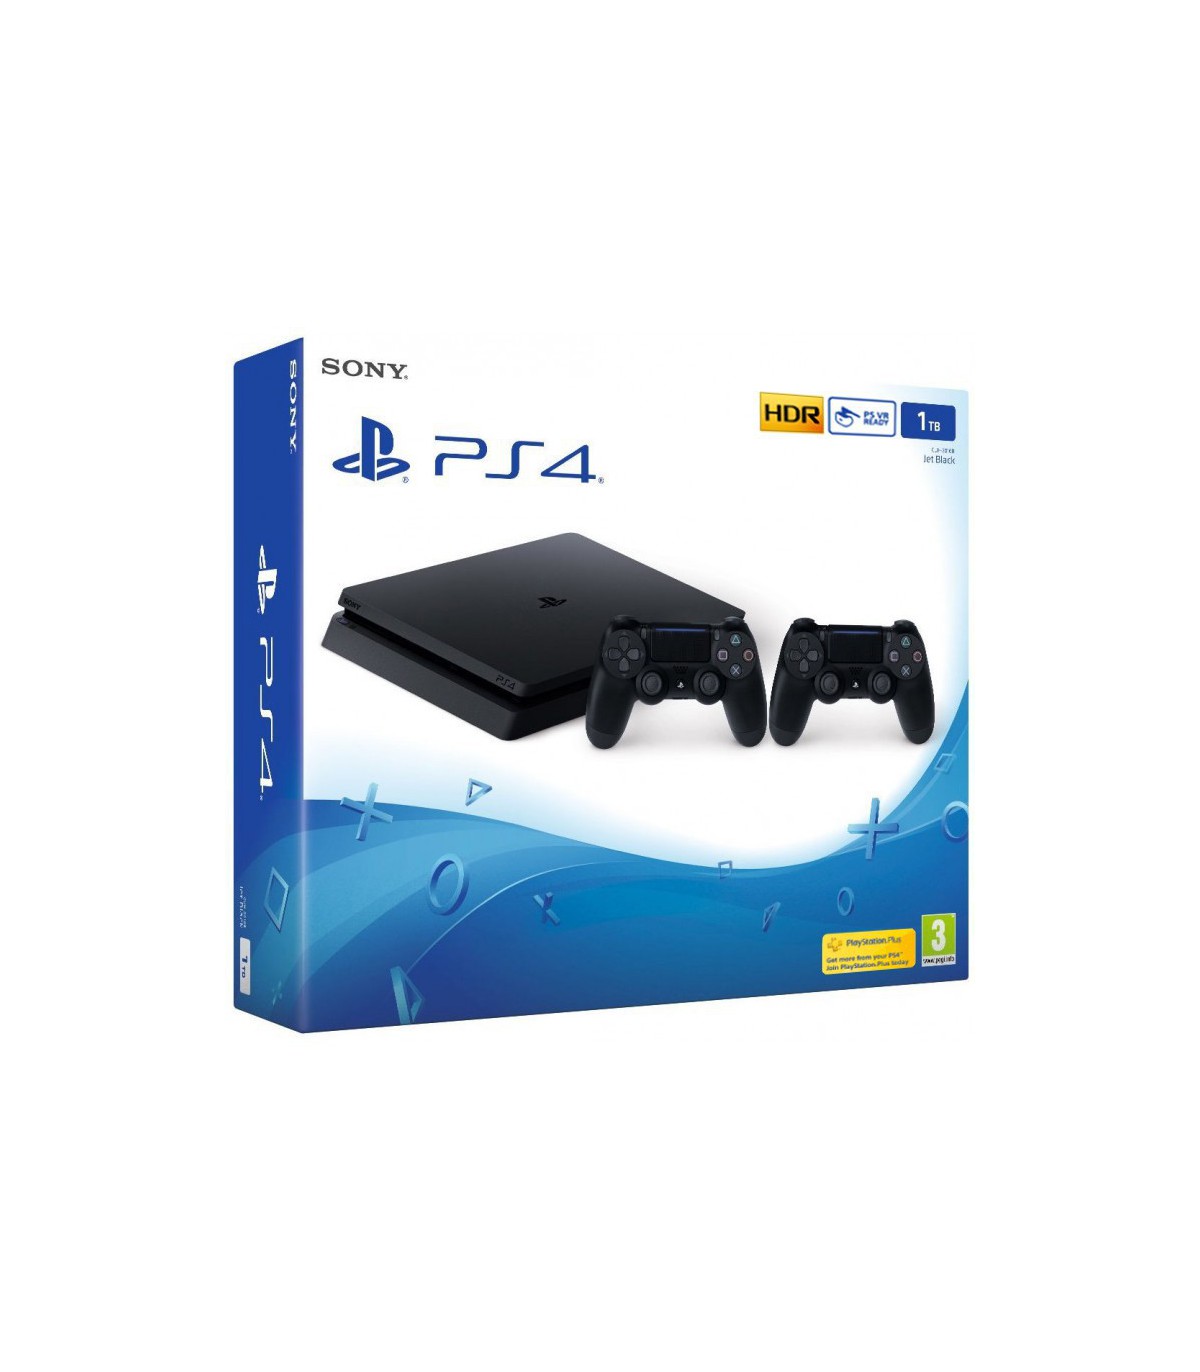 Sony Playstation 4 Slim Region 2 CUH-2116B 1TB 2 Controller Game Console